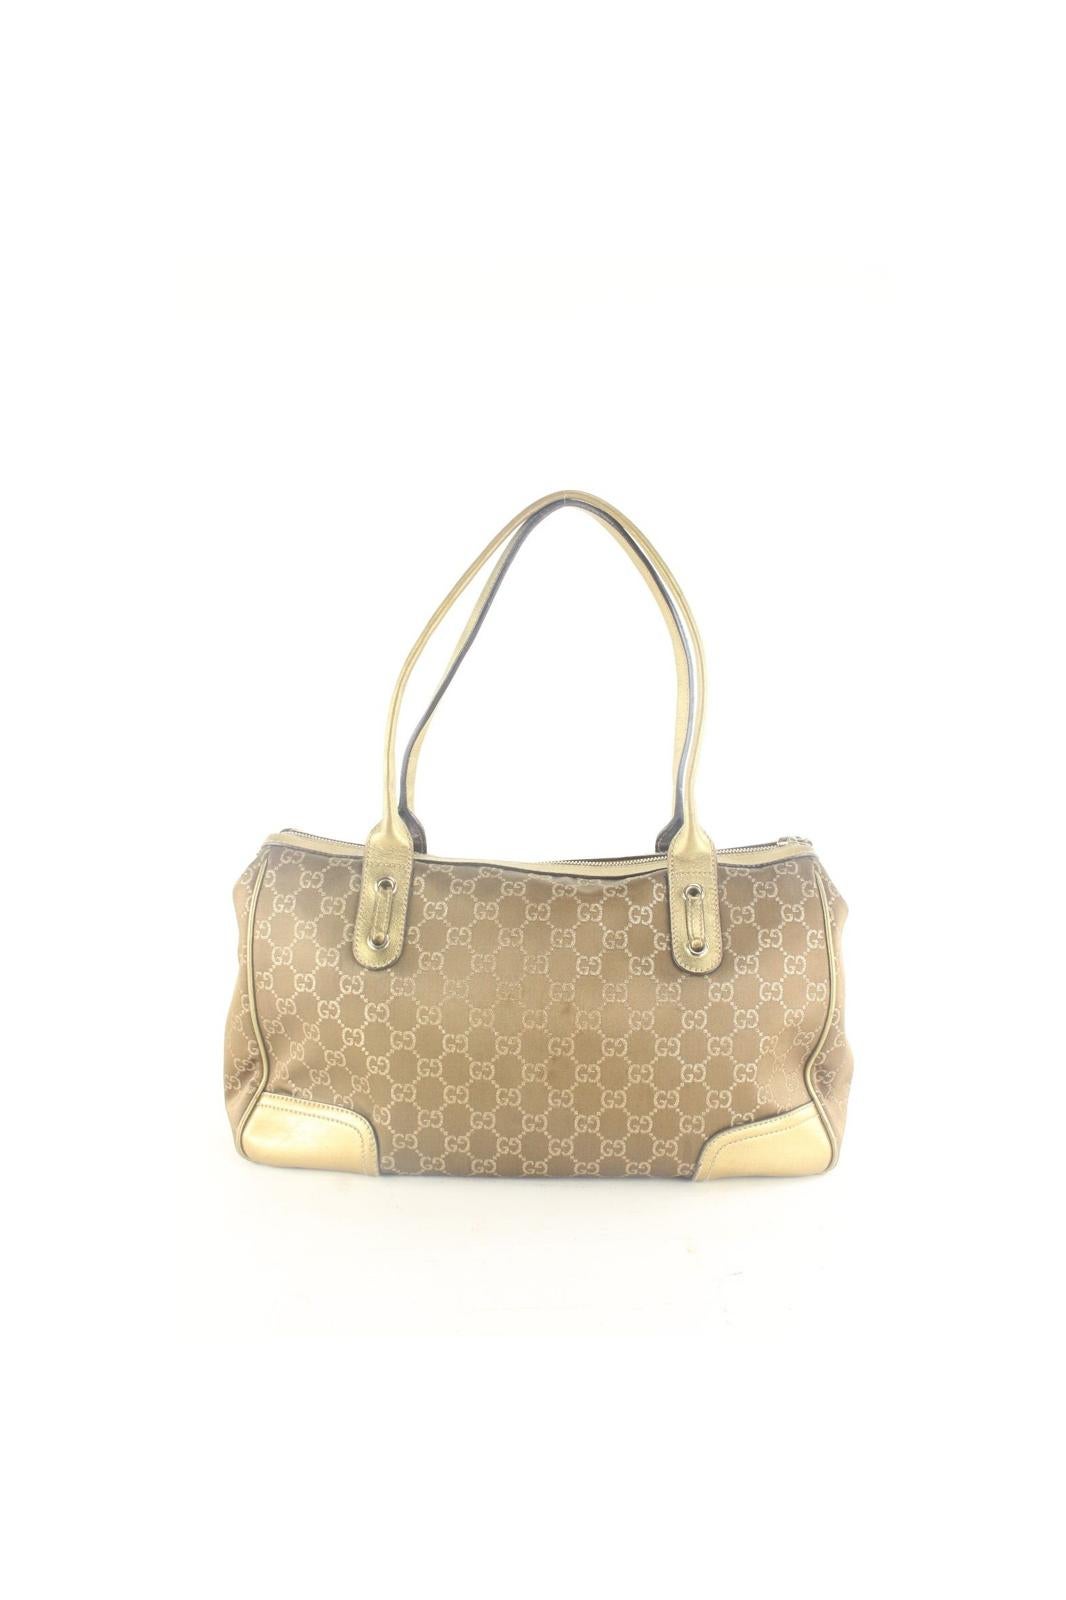 Gucci Rare Metallic Bronze Gold Shoulder Bag 3GK1012K For Sale 7